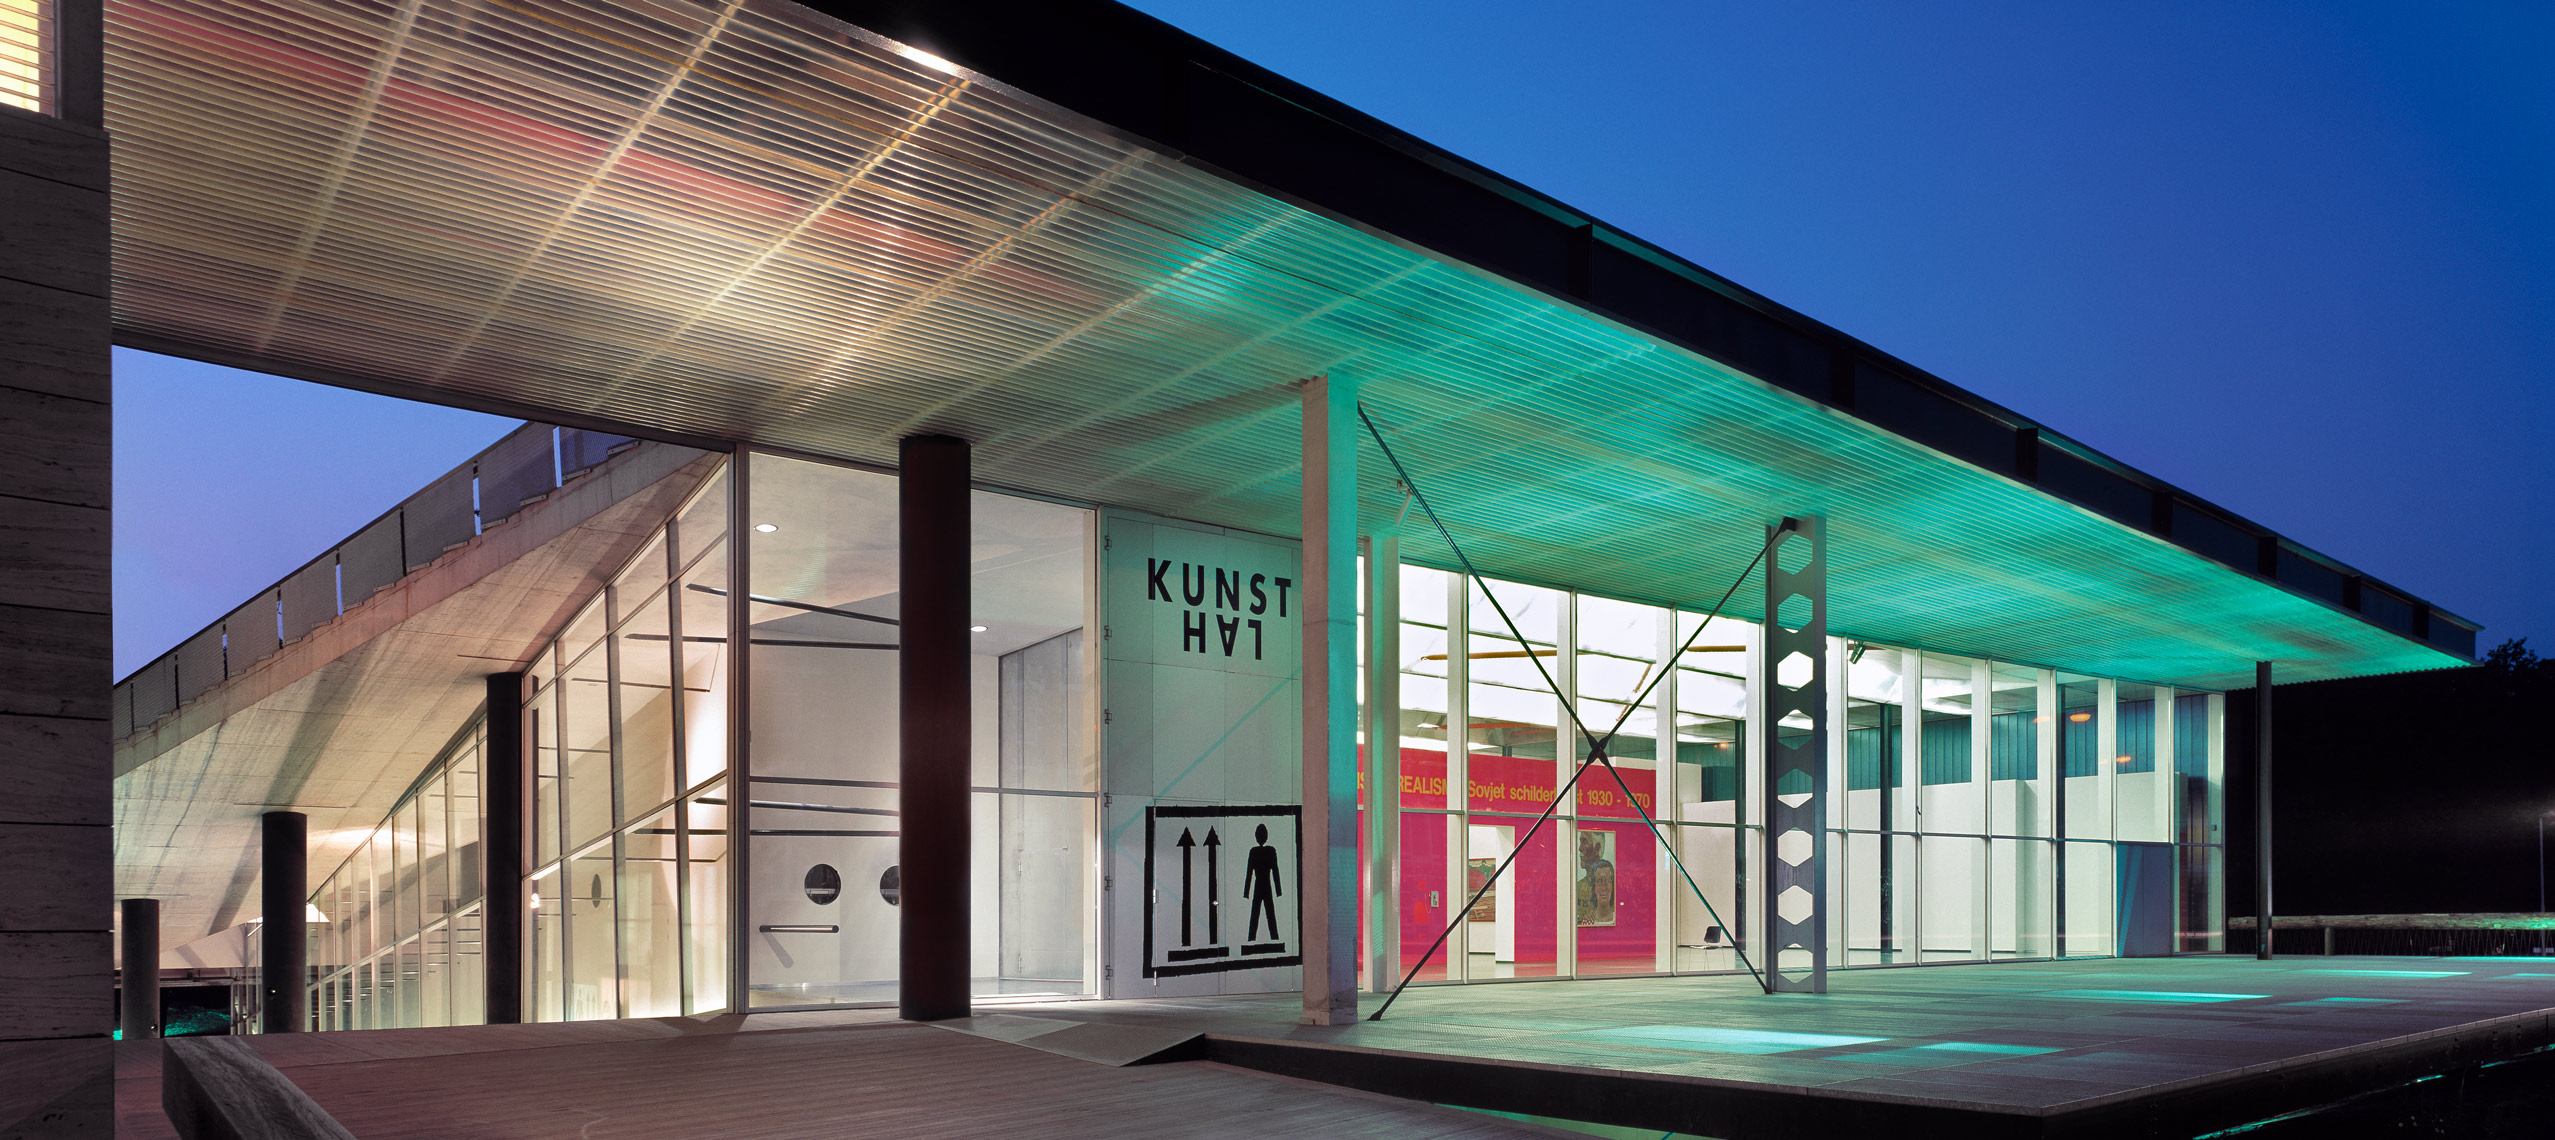 Kunsthal, Rotterdam, Rem Koolhaas, OMA, Museum